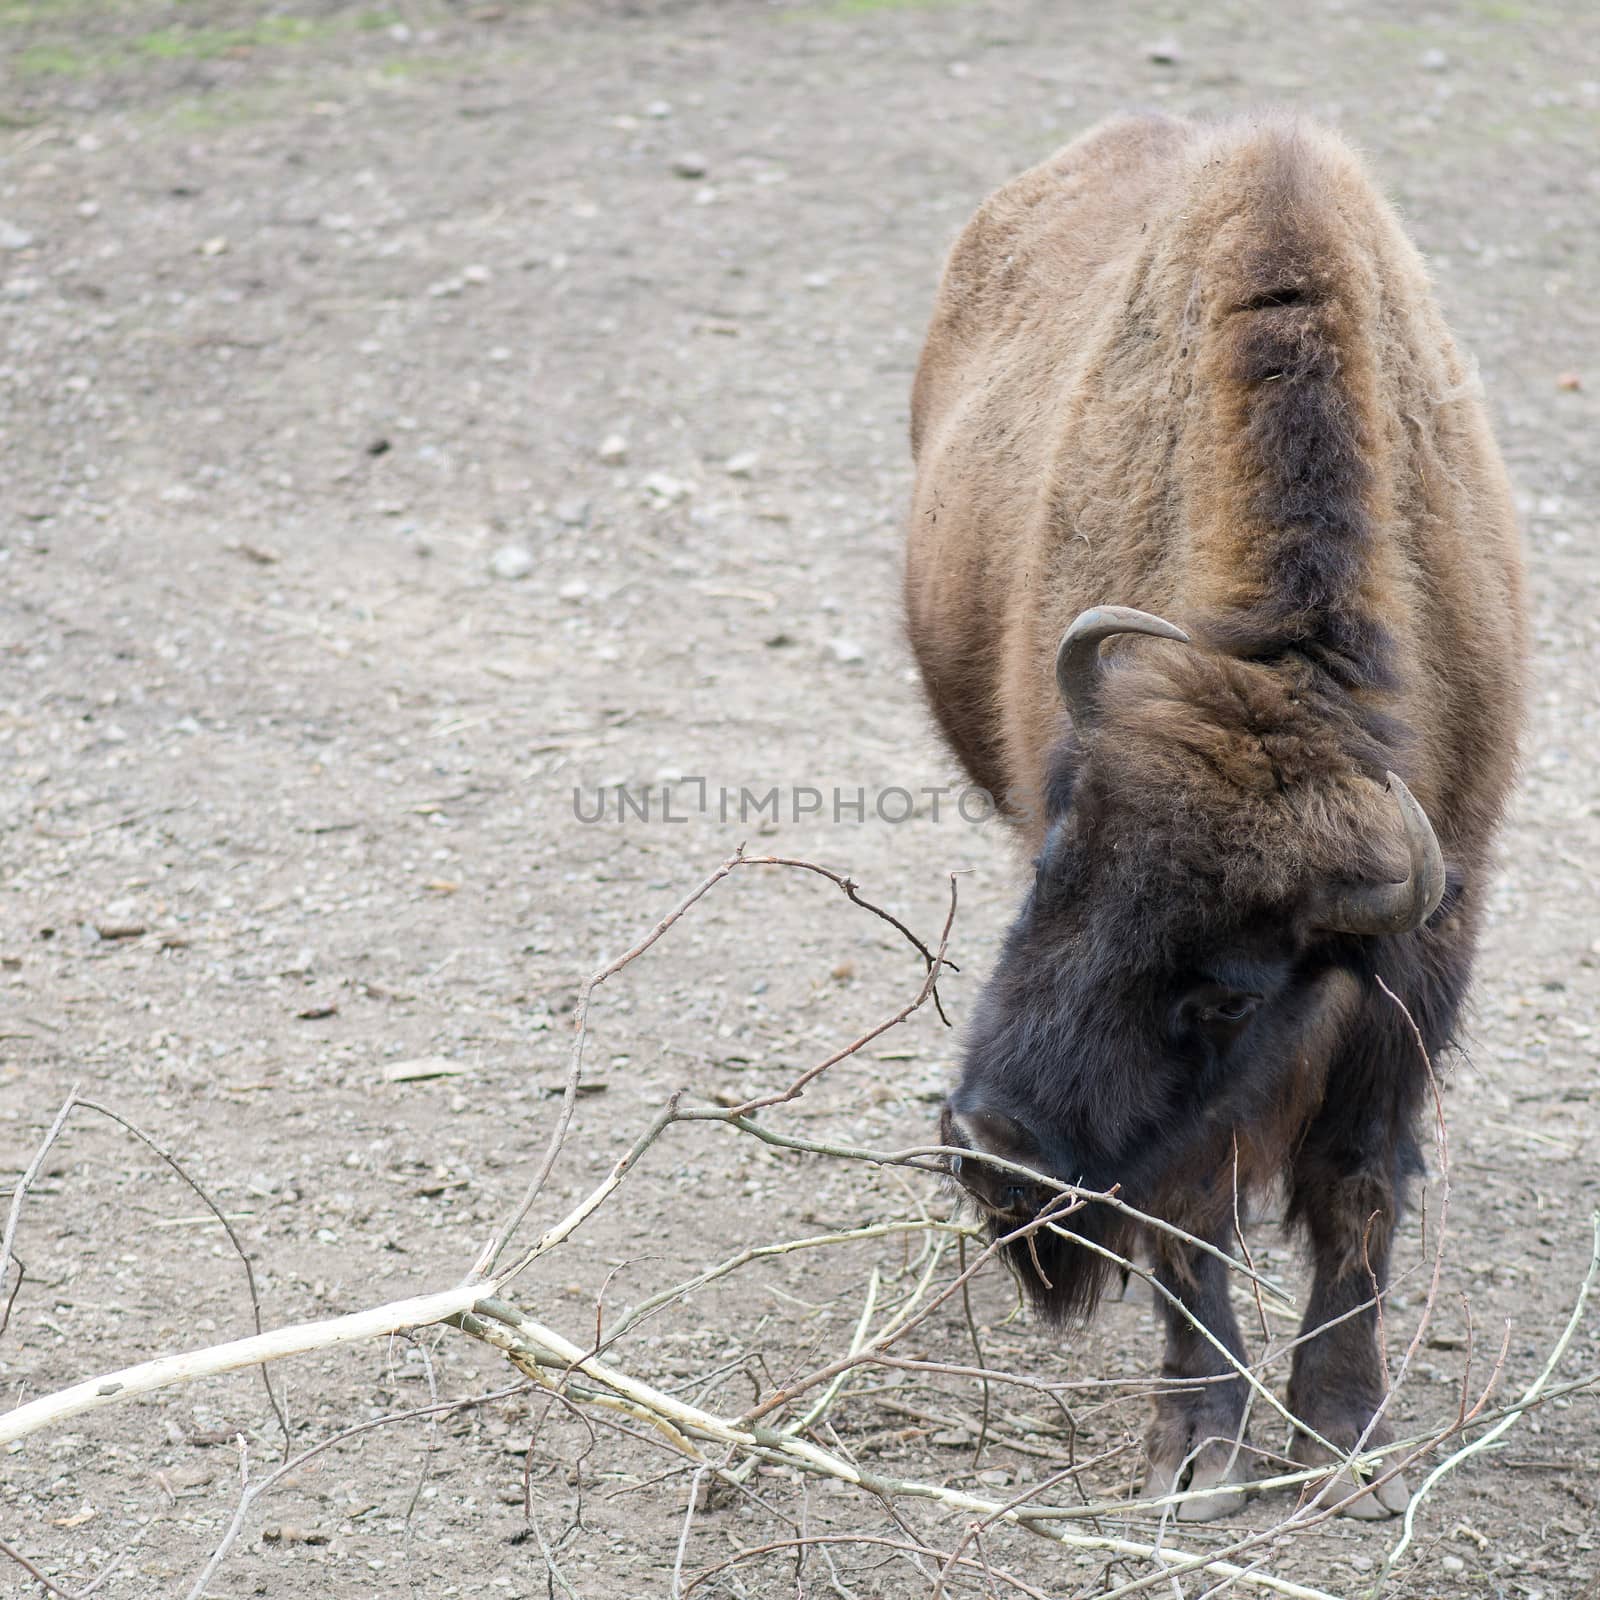 European bison, Bison bonasus eating at a tree branch